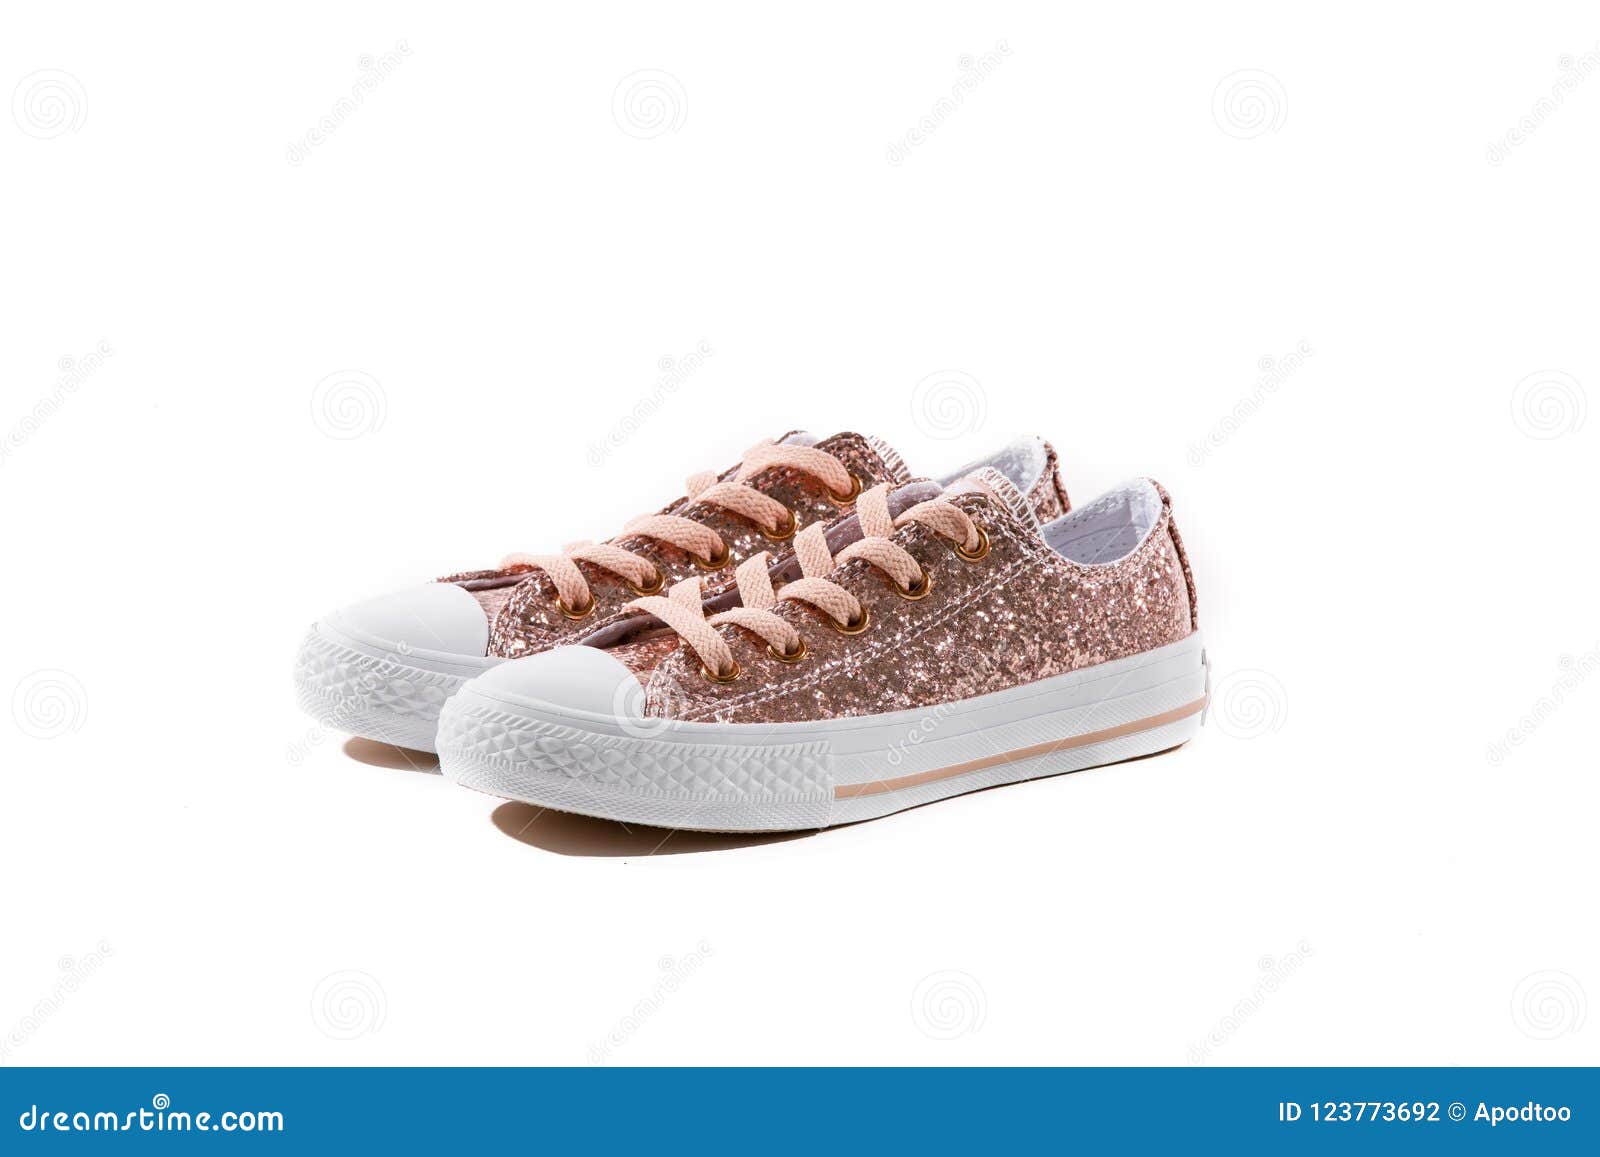 white glitter tennis shoes